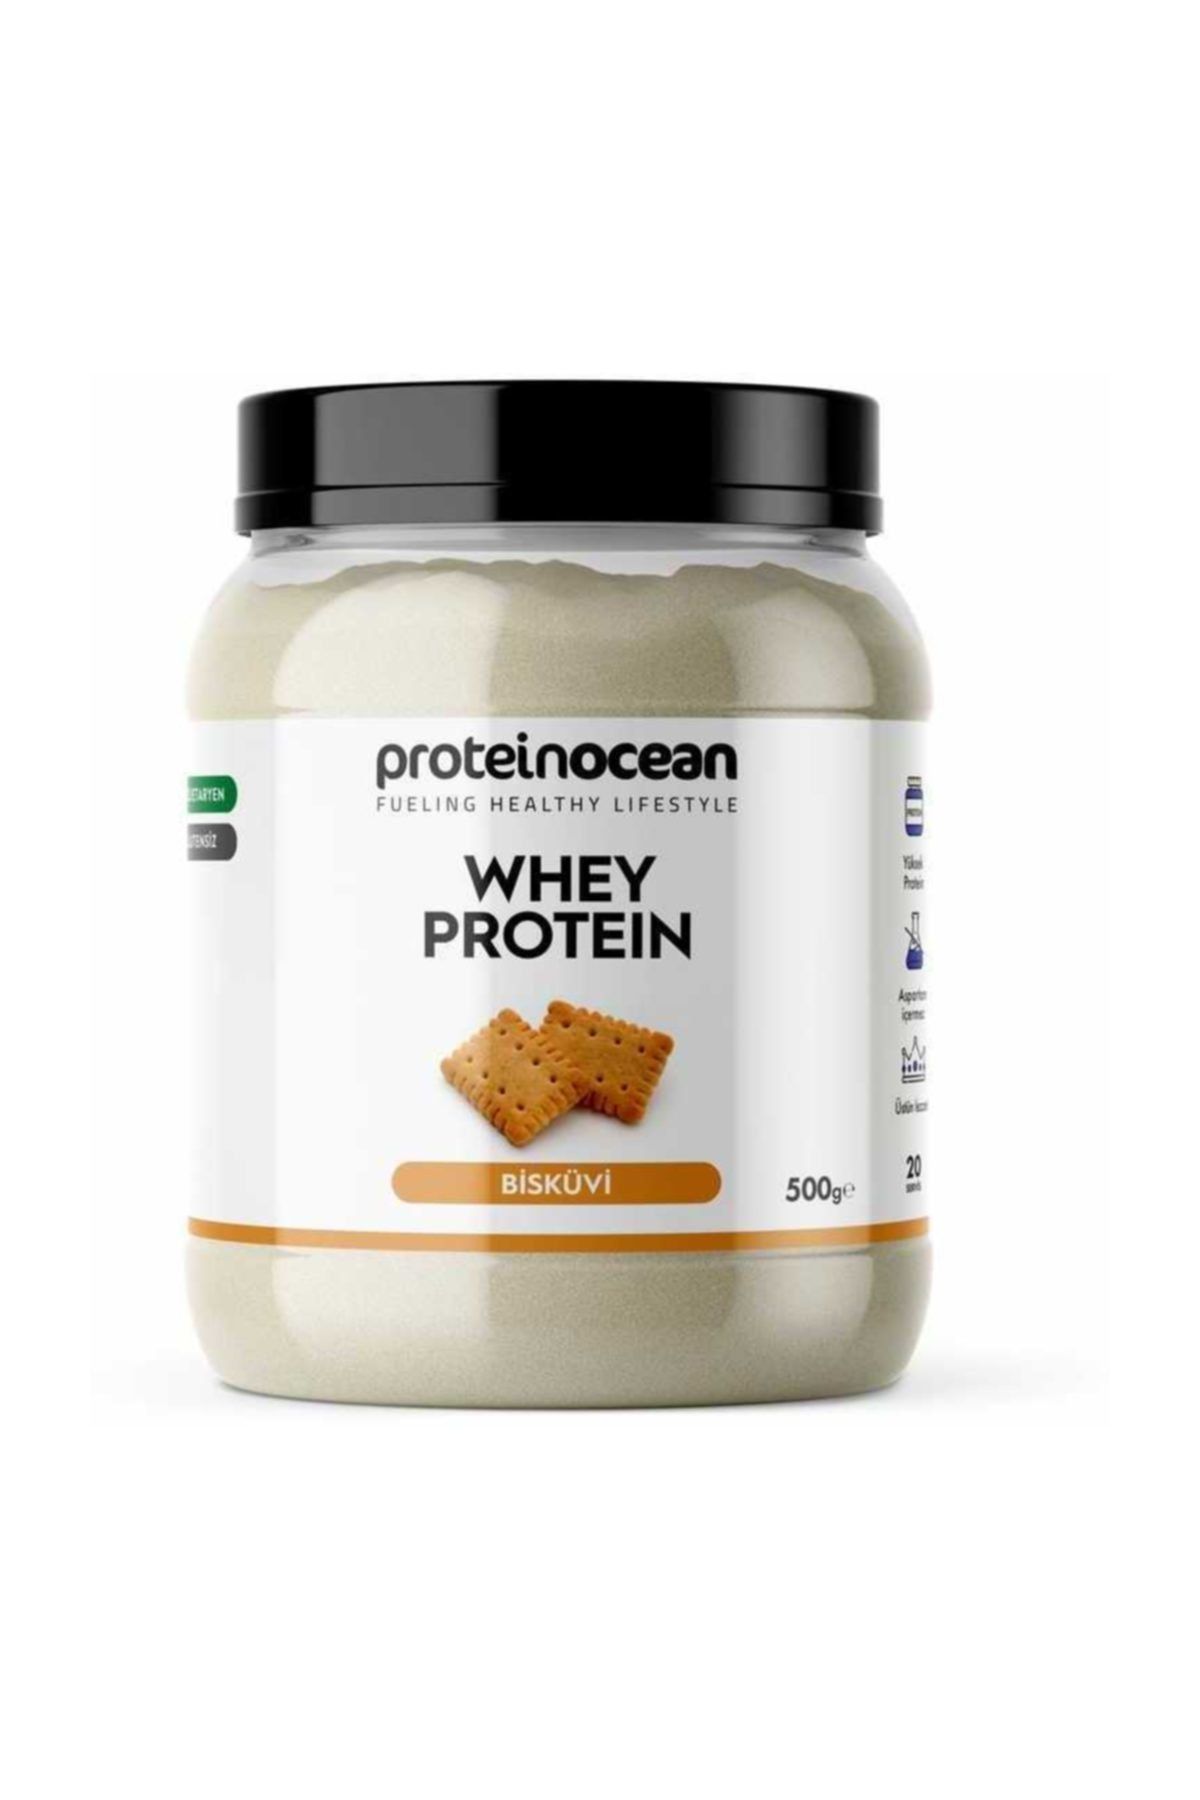 Proteinocean WHEY PROTEIN™ Bisküvi 500g - 20 servis